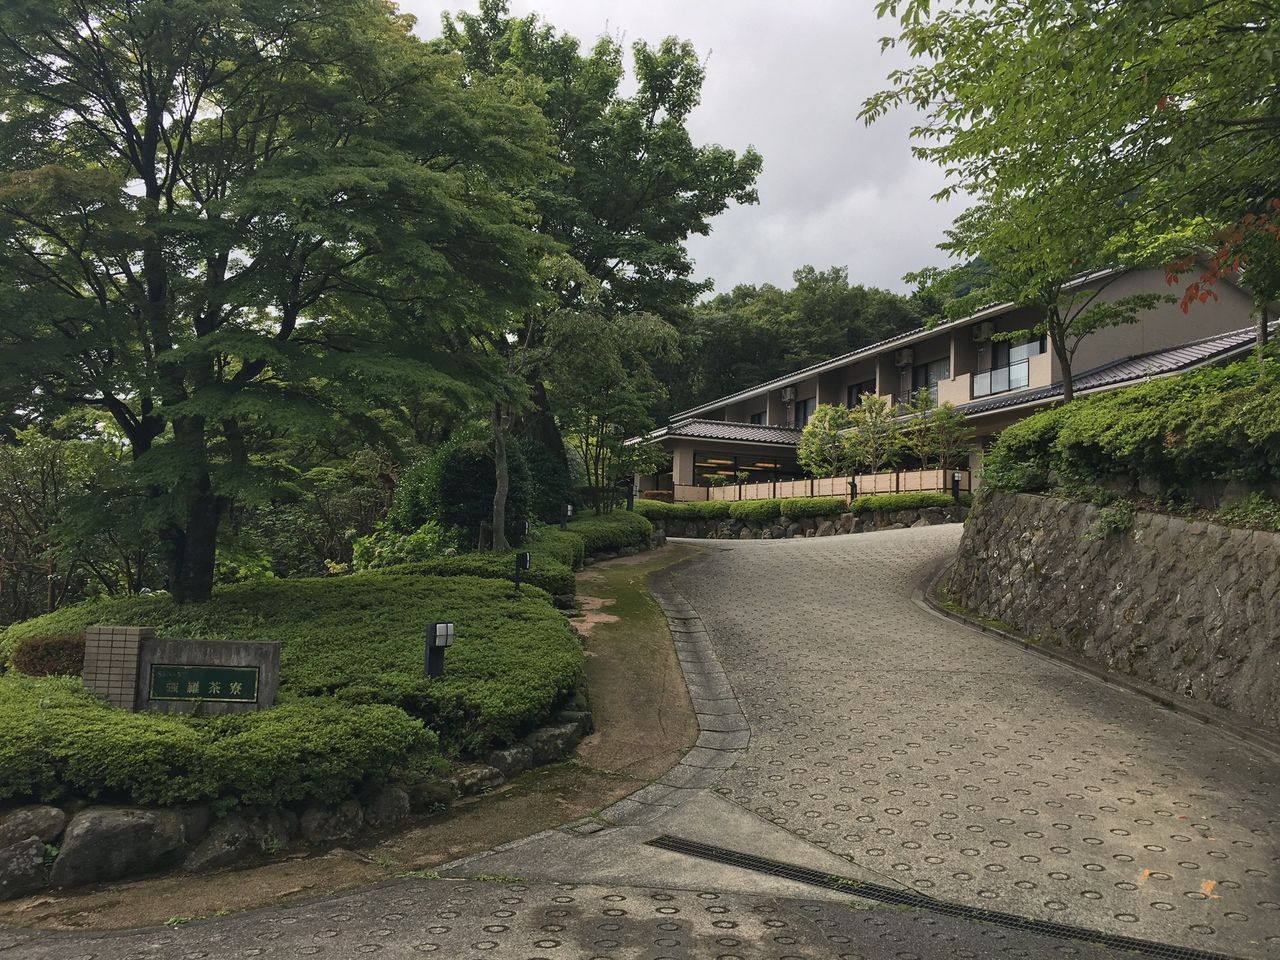 Japoński dom w miejscowości Hakone